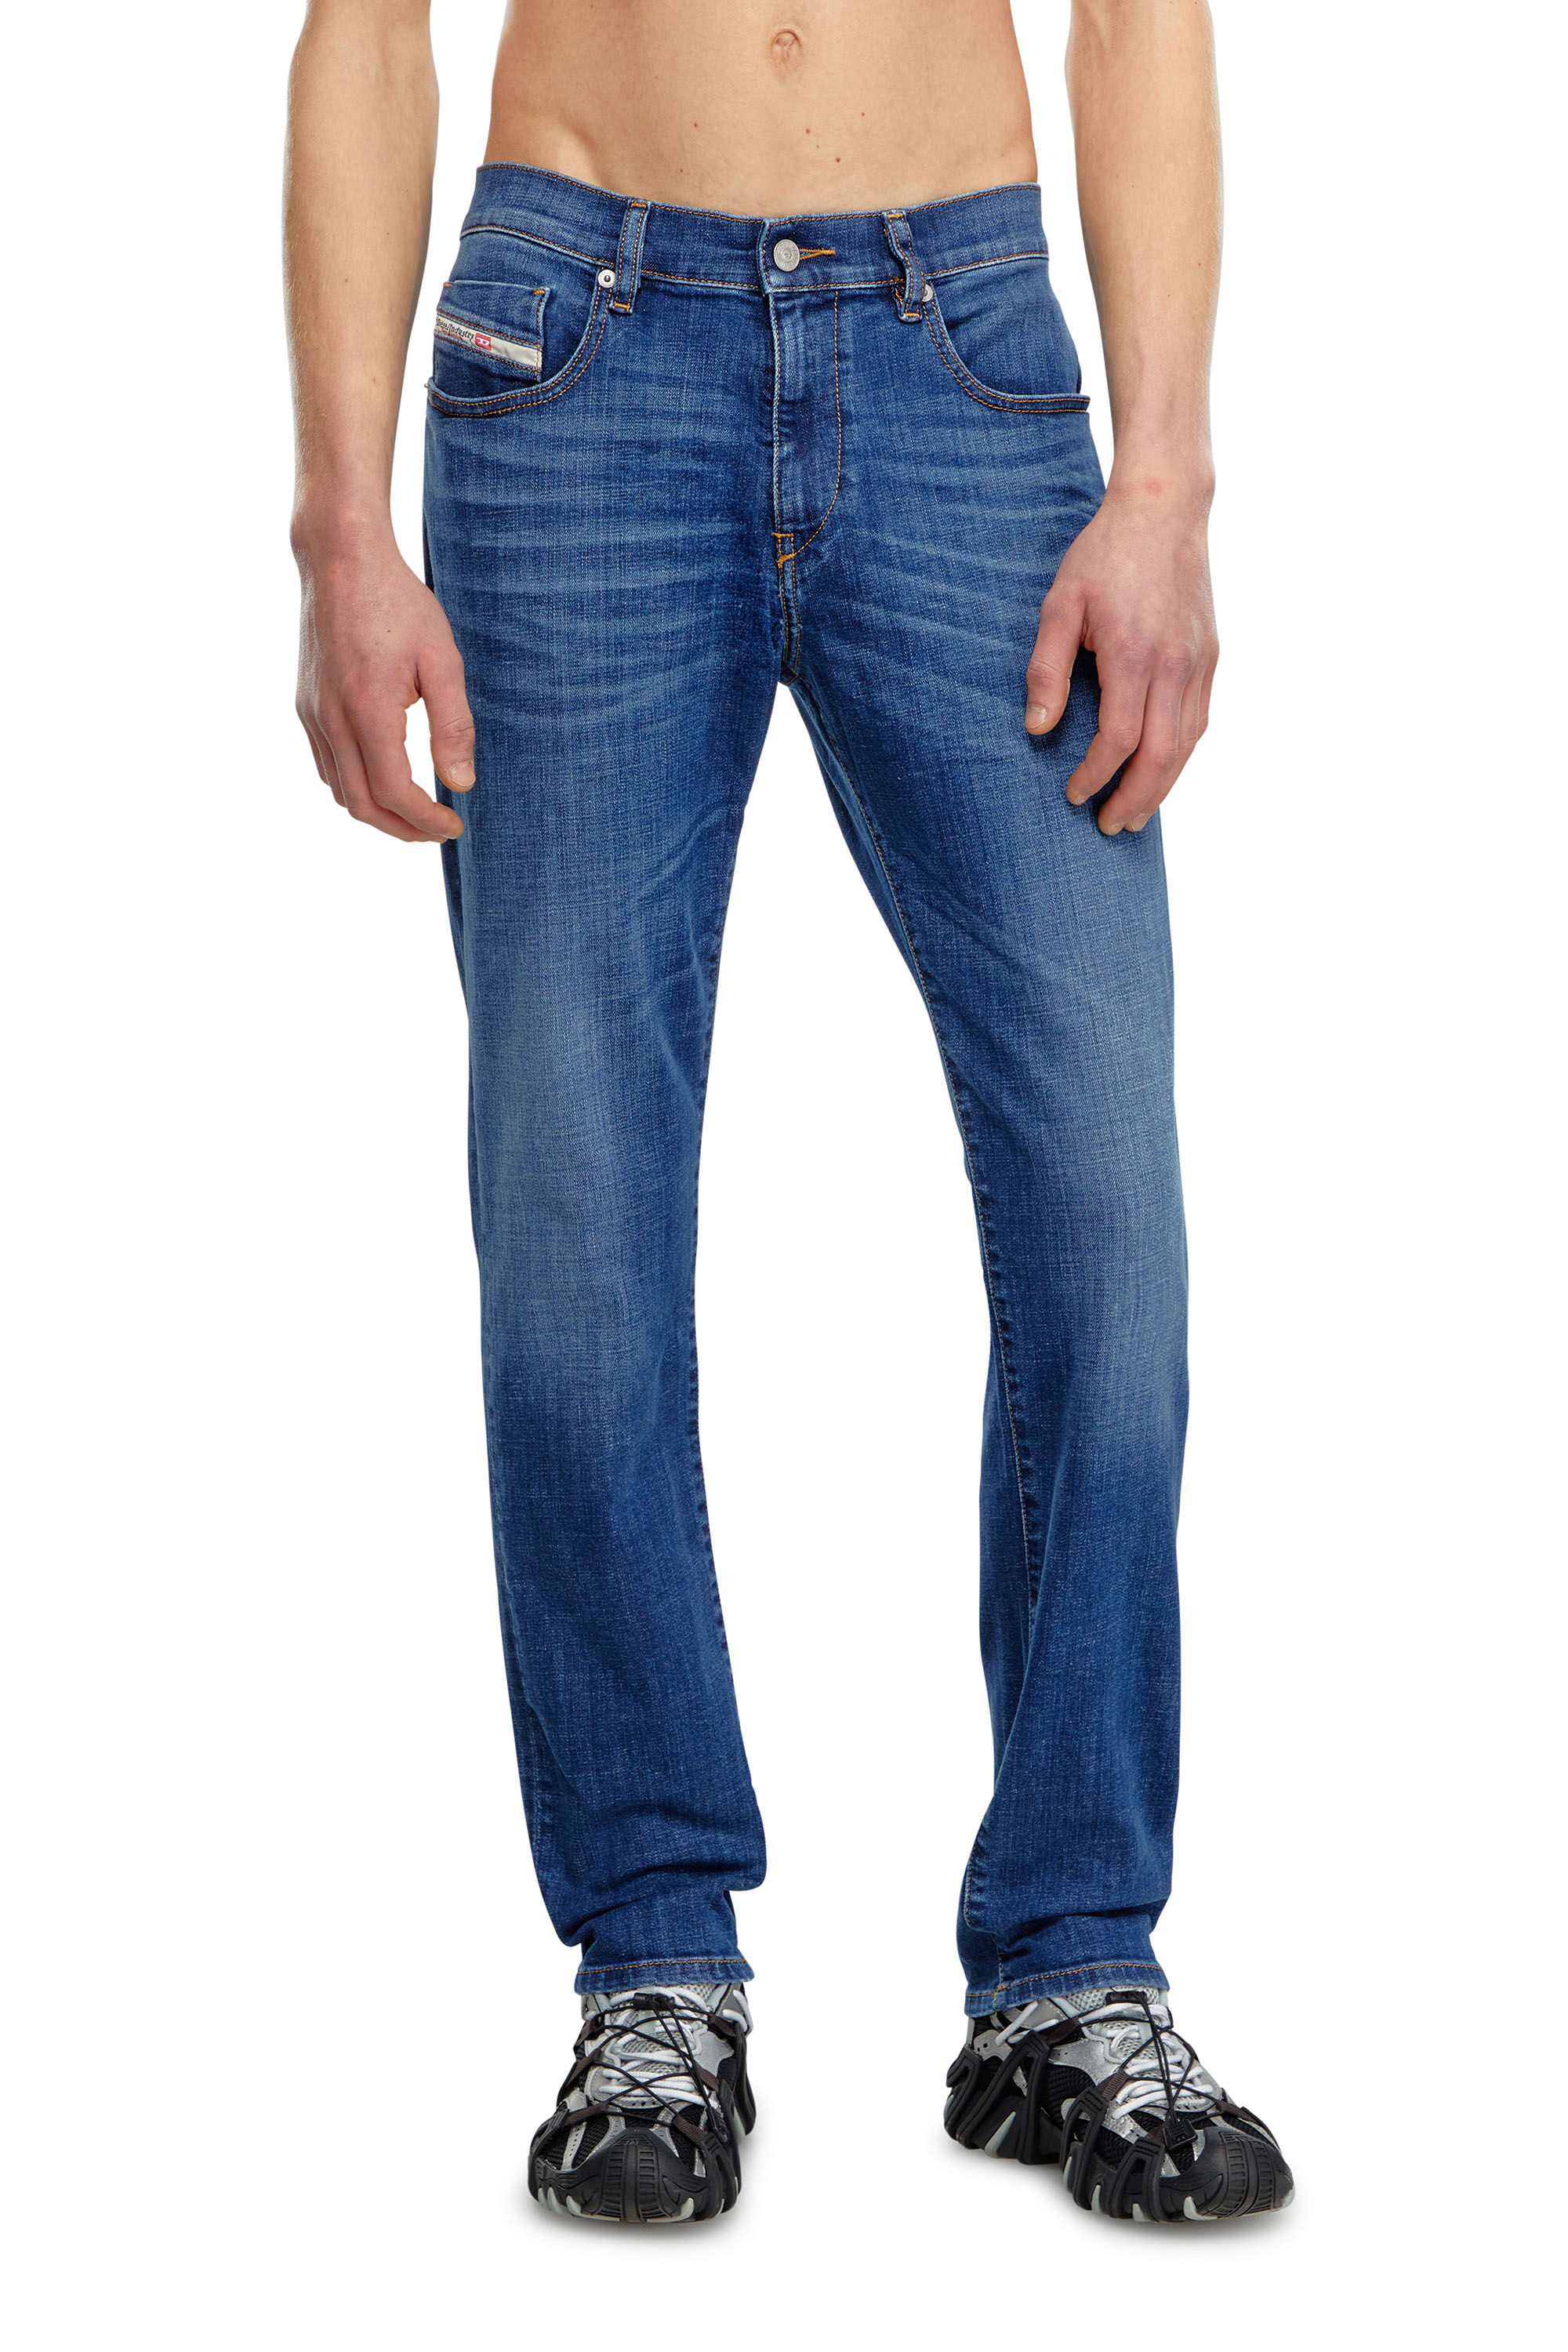 Diesel - Slim Jeans 2019 D-Strukt 09K04, Hombre Slim Jeans - 2019 D-Strukt in Azul marino - Image 3